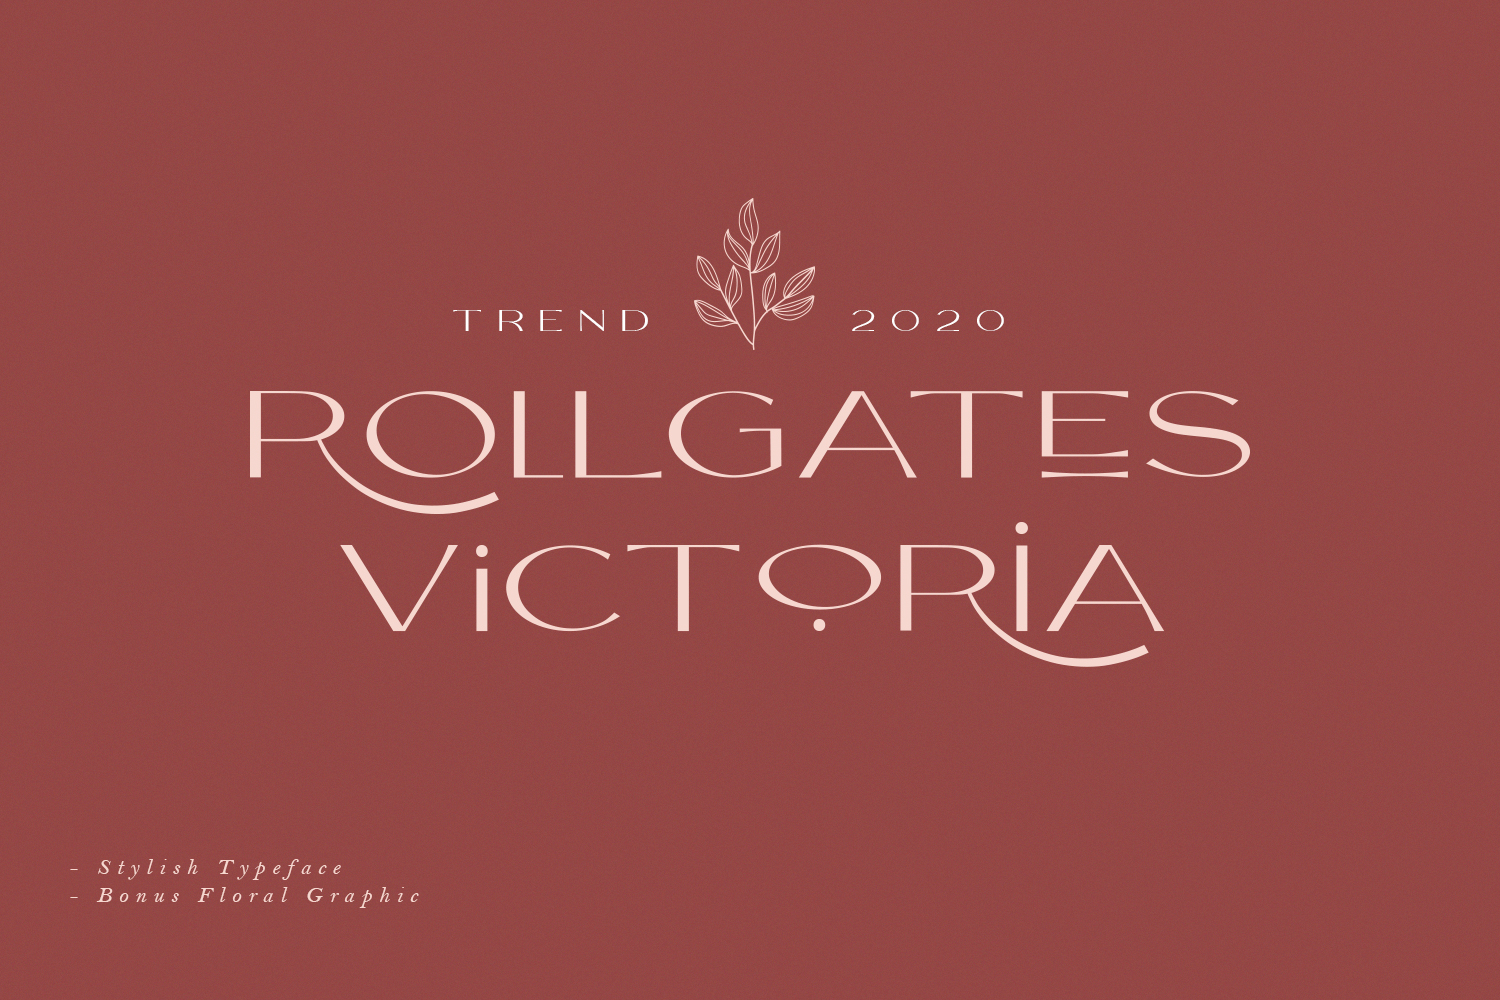 Rollgates Victoria Demo Free Font